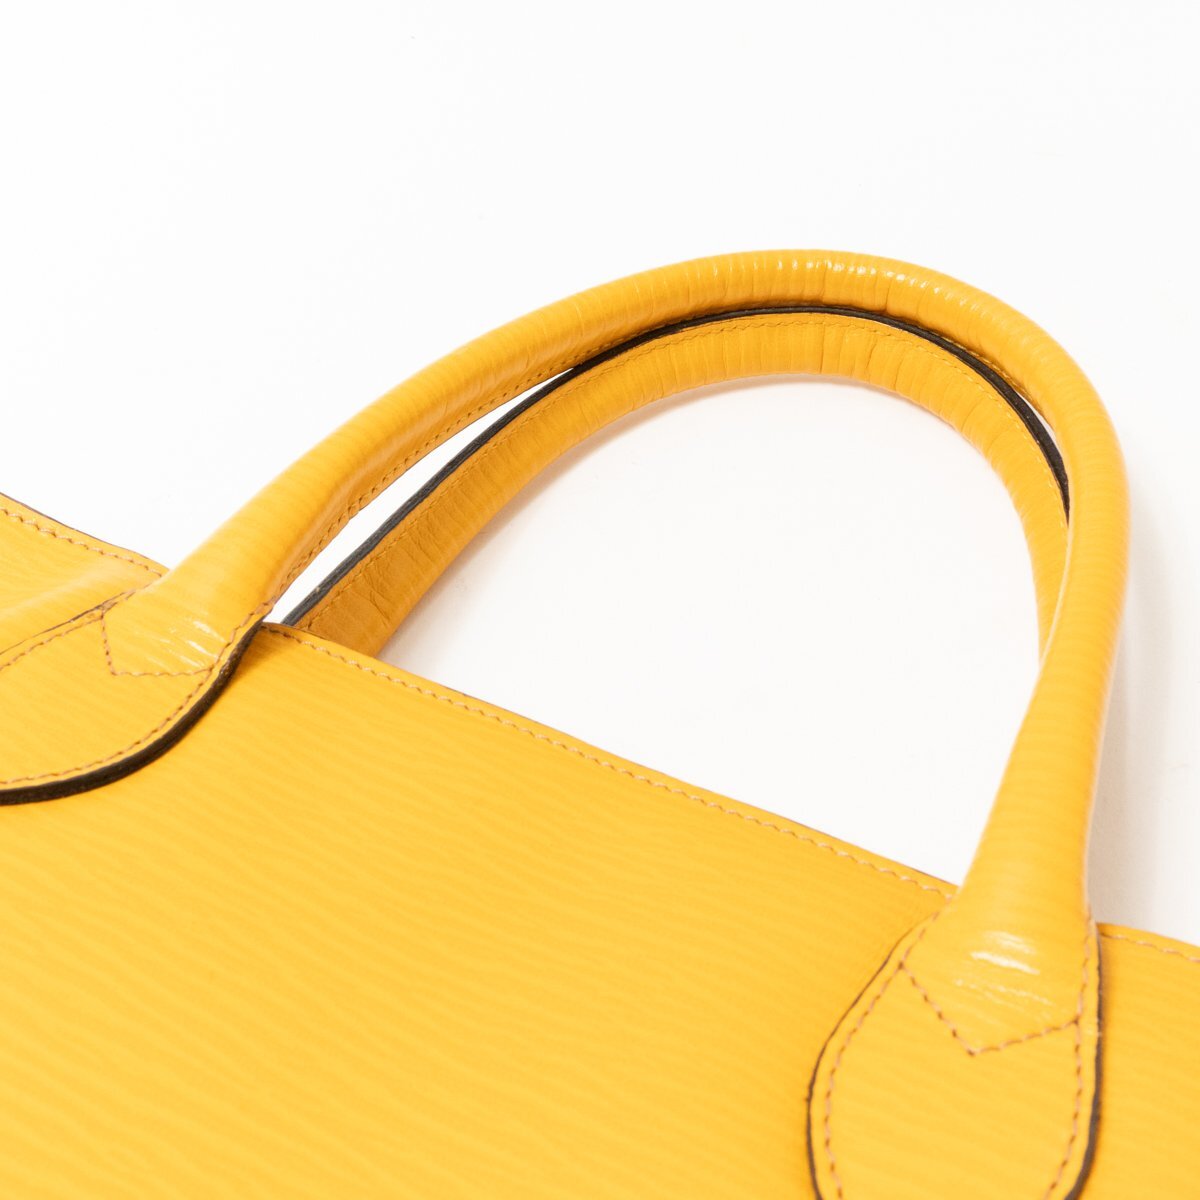 GOLD PFEIL ручная сумочка Gold-Pfeil горчично-желтый застежка-молния открытие и закрытие красивый . elegant кожа Logo bag сумка женщина женский 